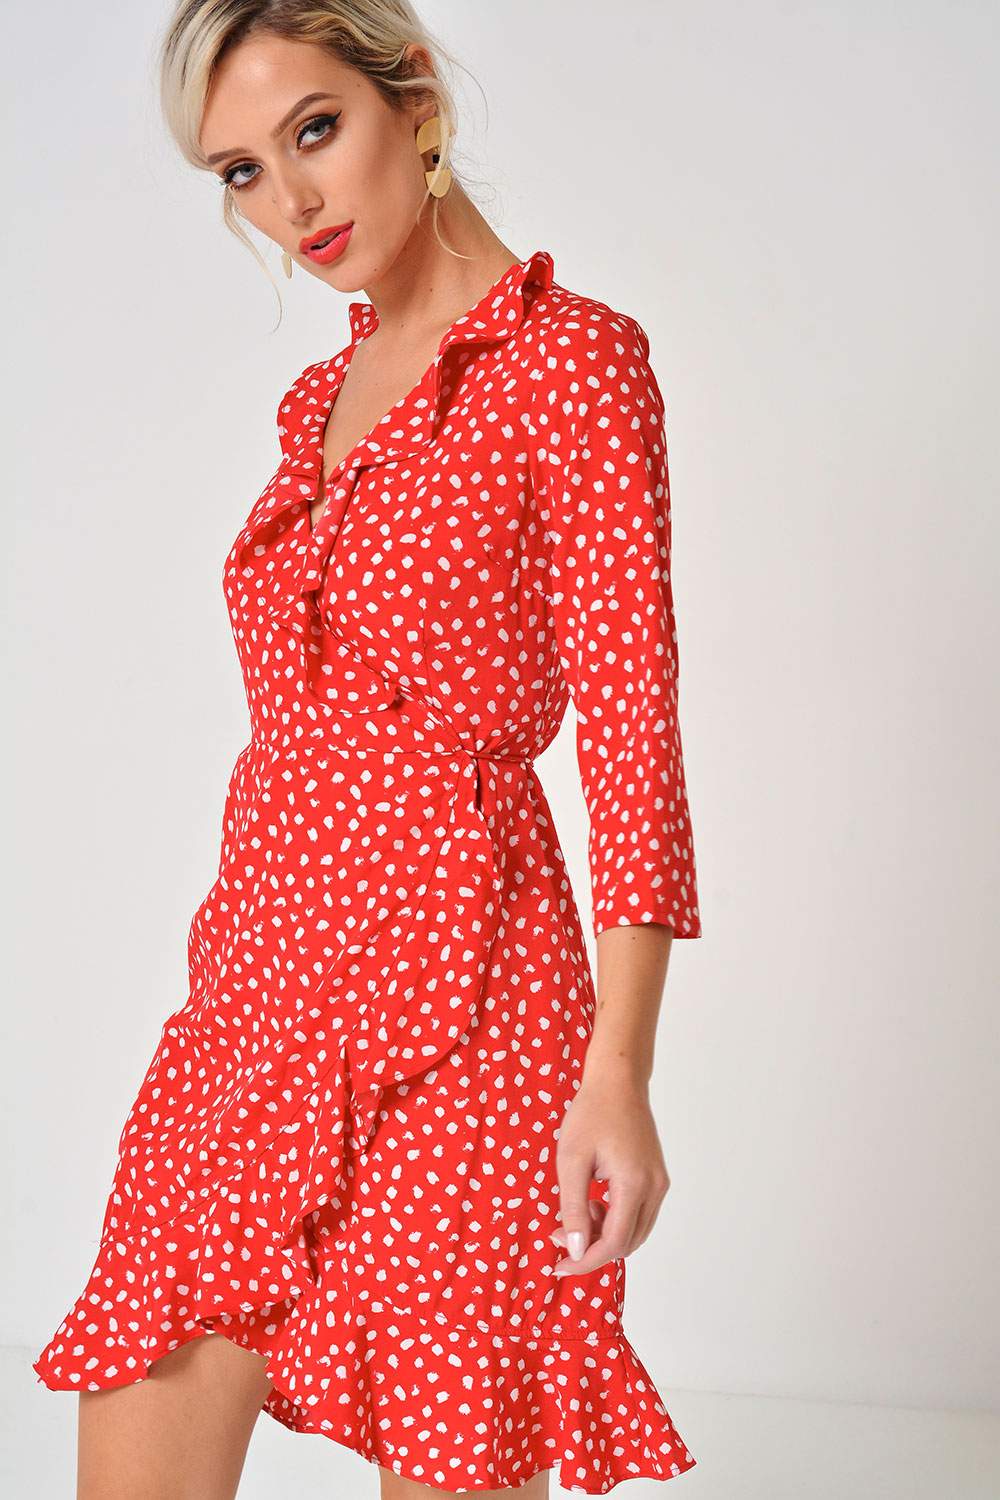 ufuldstændig fungere chikane Vero Moda Henna Polka Dot Wrap Dress in Red | iCLOTHING - iCLOTHING